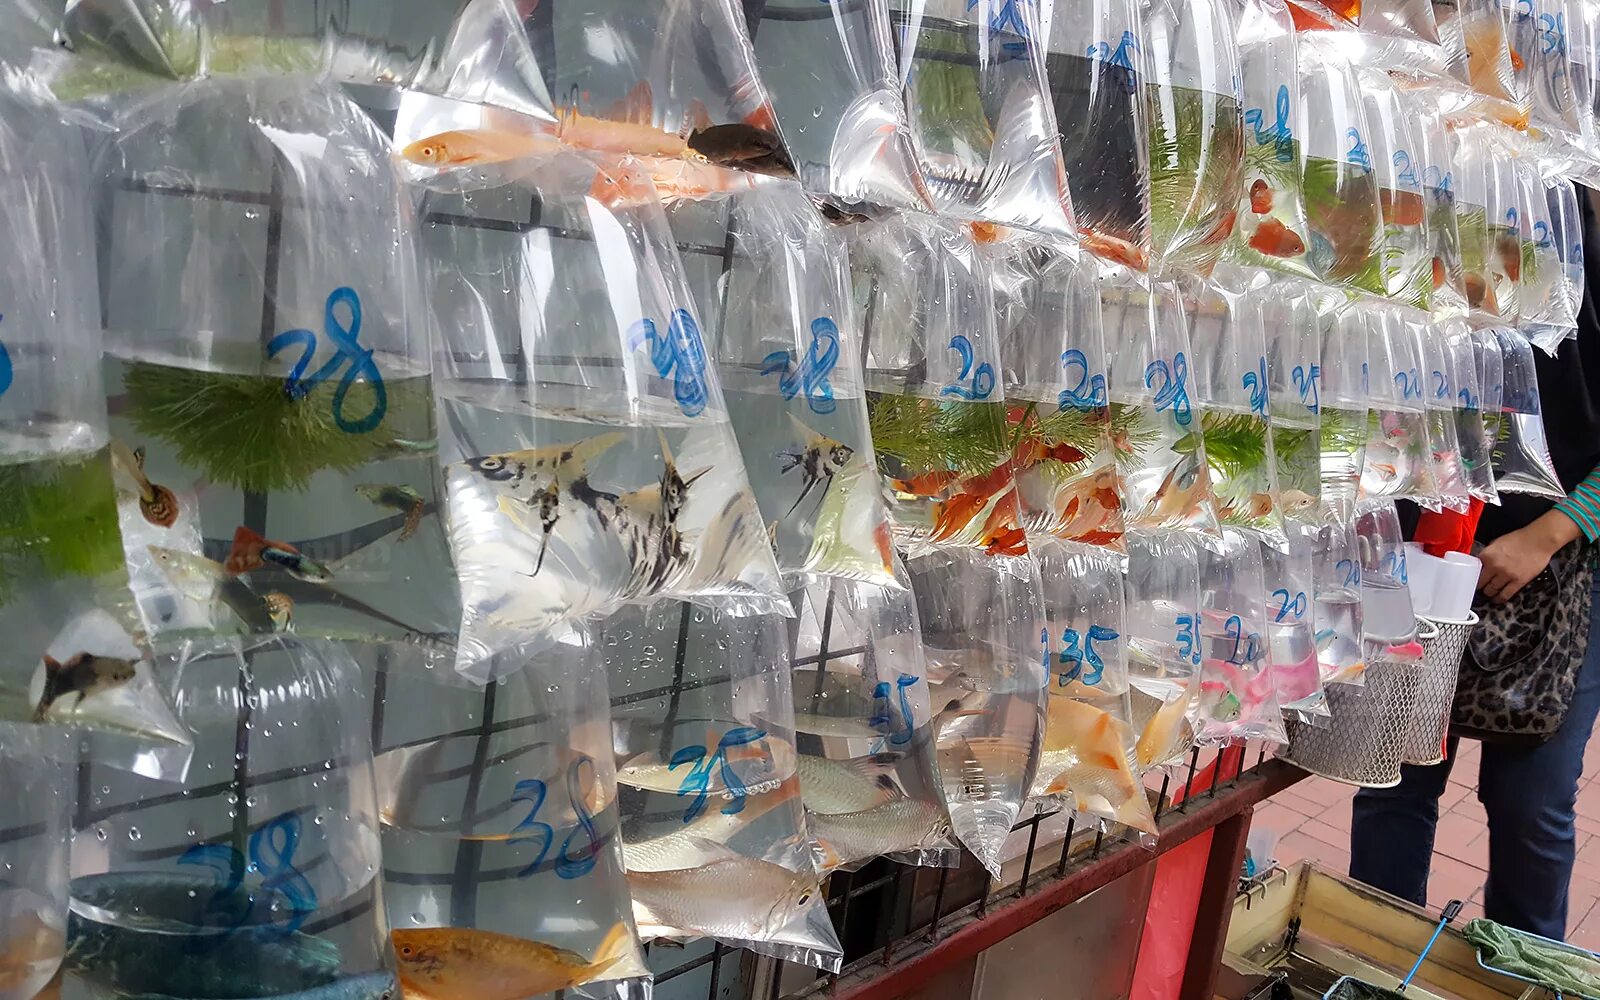 Продать аквариумных рыбок. Птичий рынок рыбки аквариумные. Аквариумные рыбки на рынке. Аквариумный рынок в Москве. Птичий рынок Москва аквариумные рыбки.